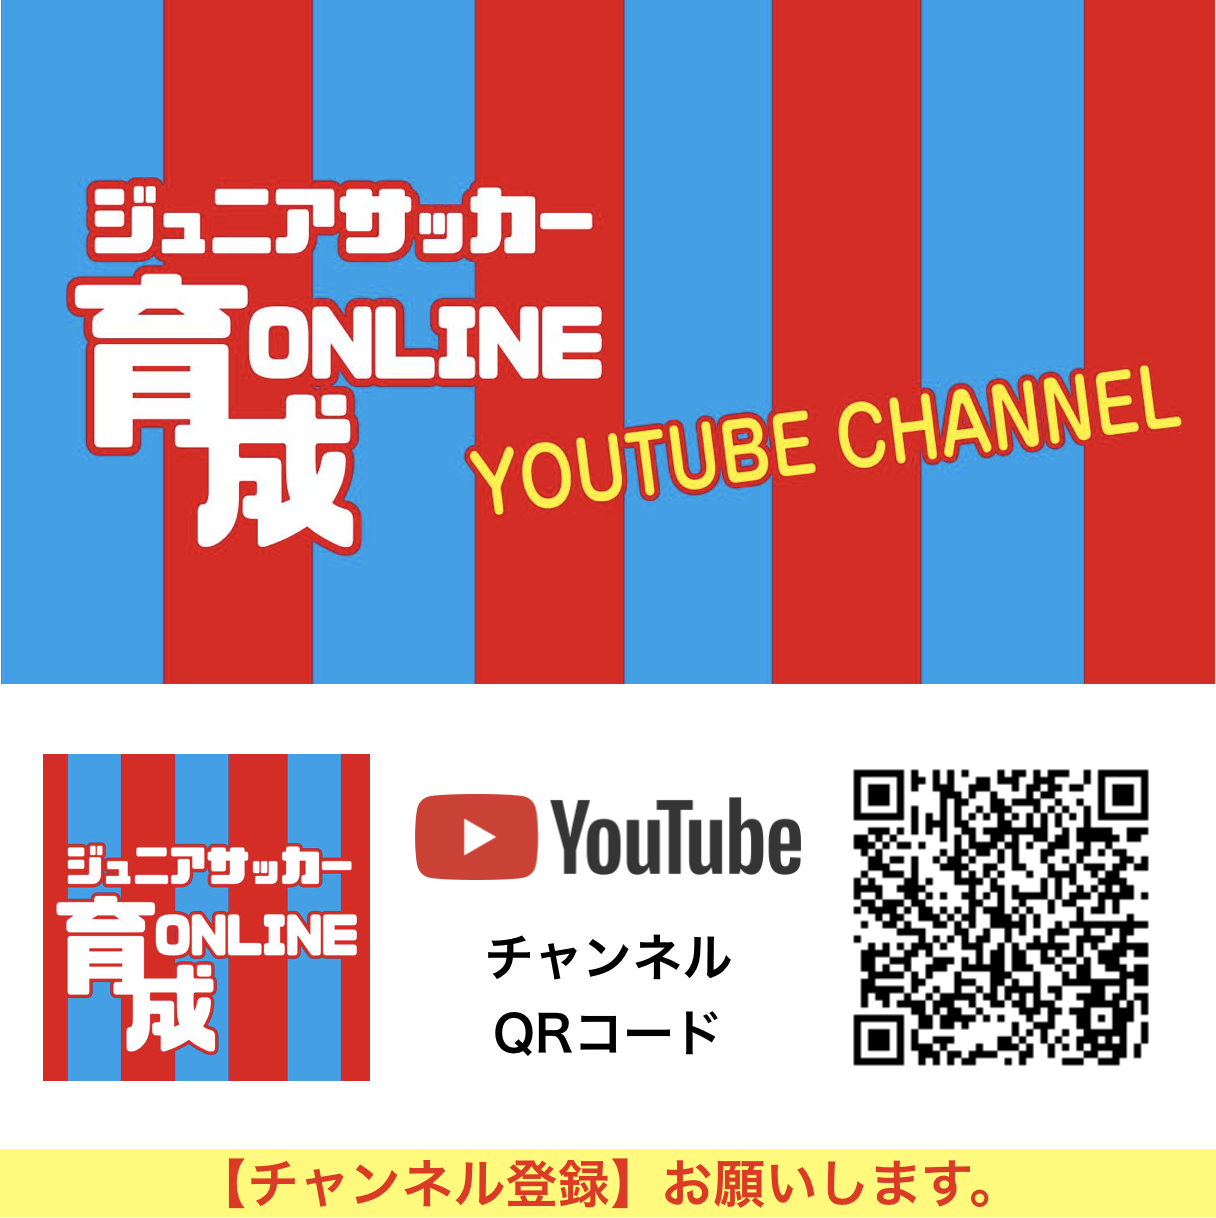 ジュニアサッカー 育成online Youtubeチャンネルを開設 大阪 豊中 北摂 を中心に活動するサッカーチームfc Salva De Souza